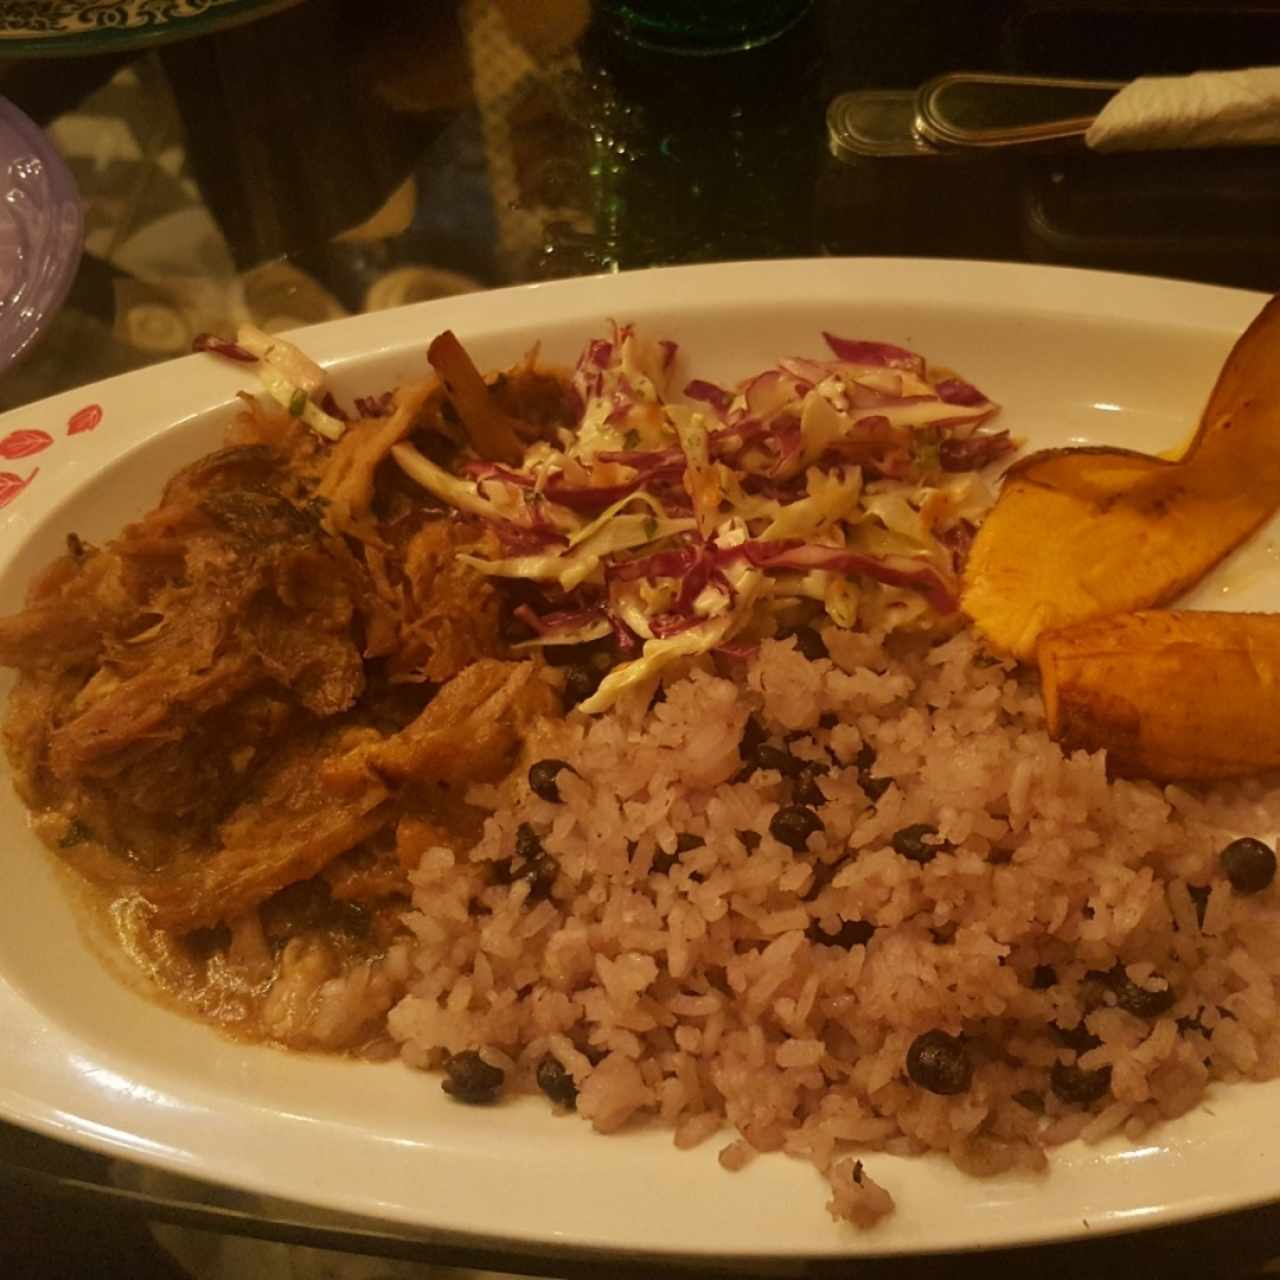 arroz con guandu, lechona, ensalada de repollo y platano